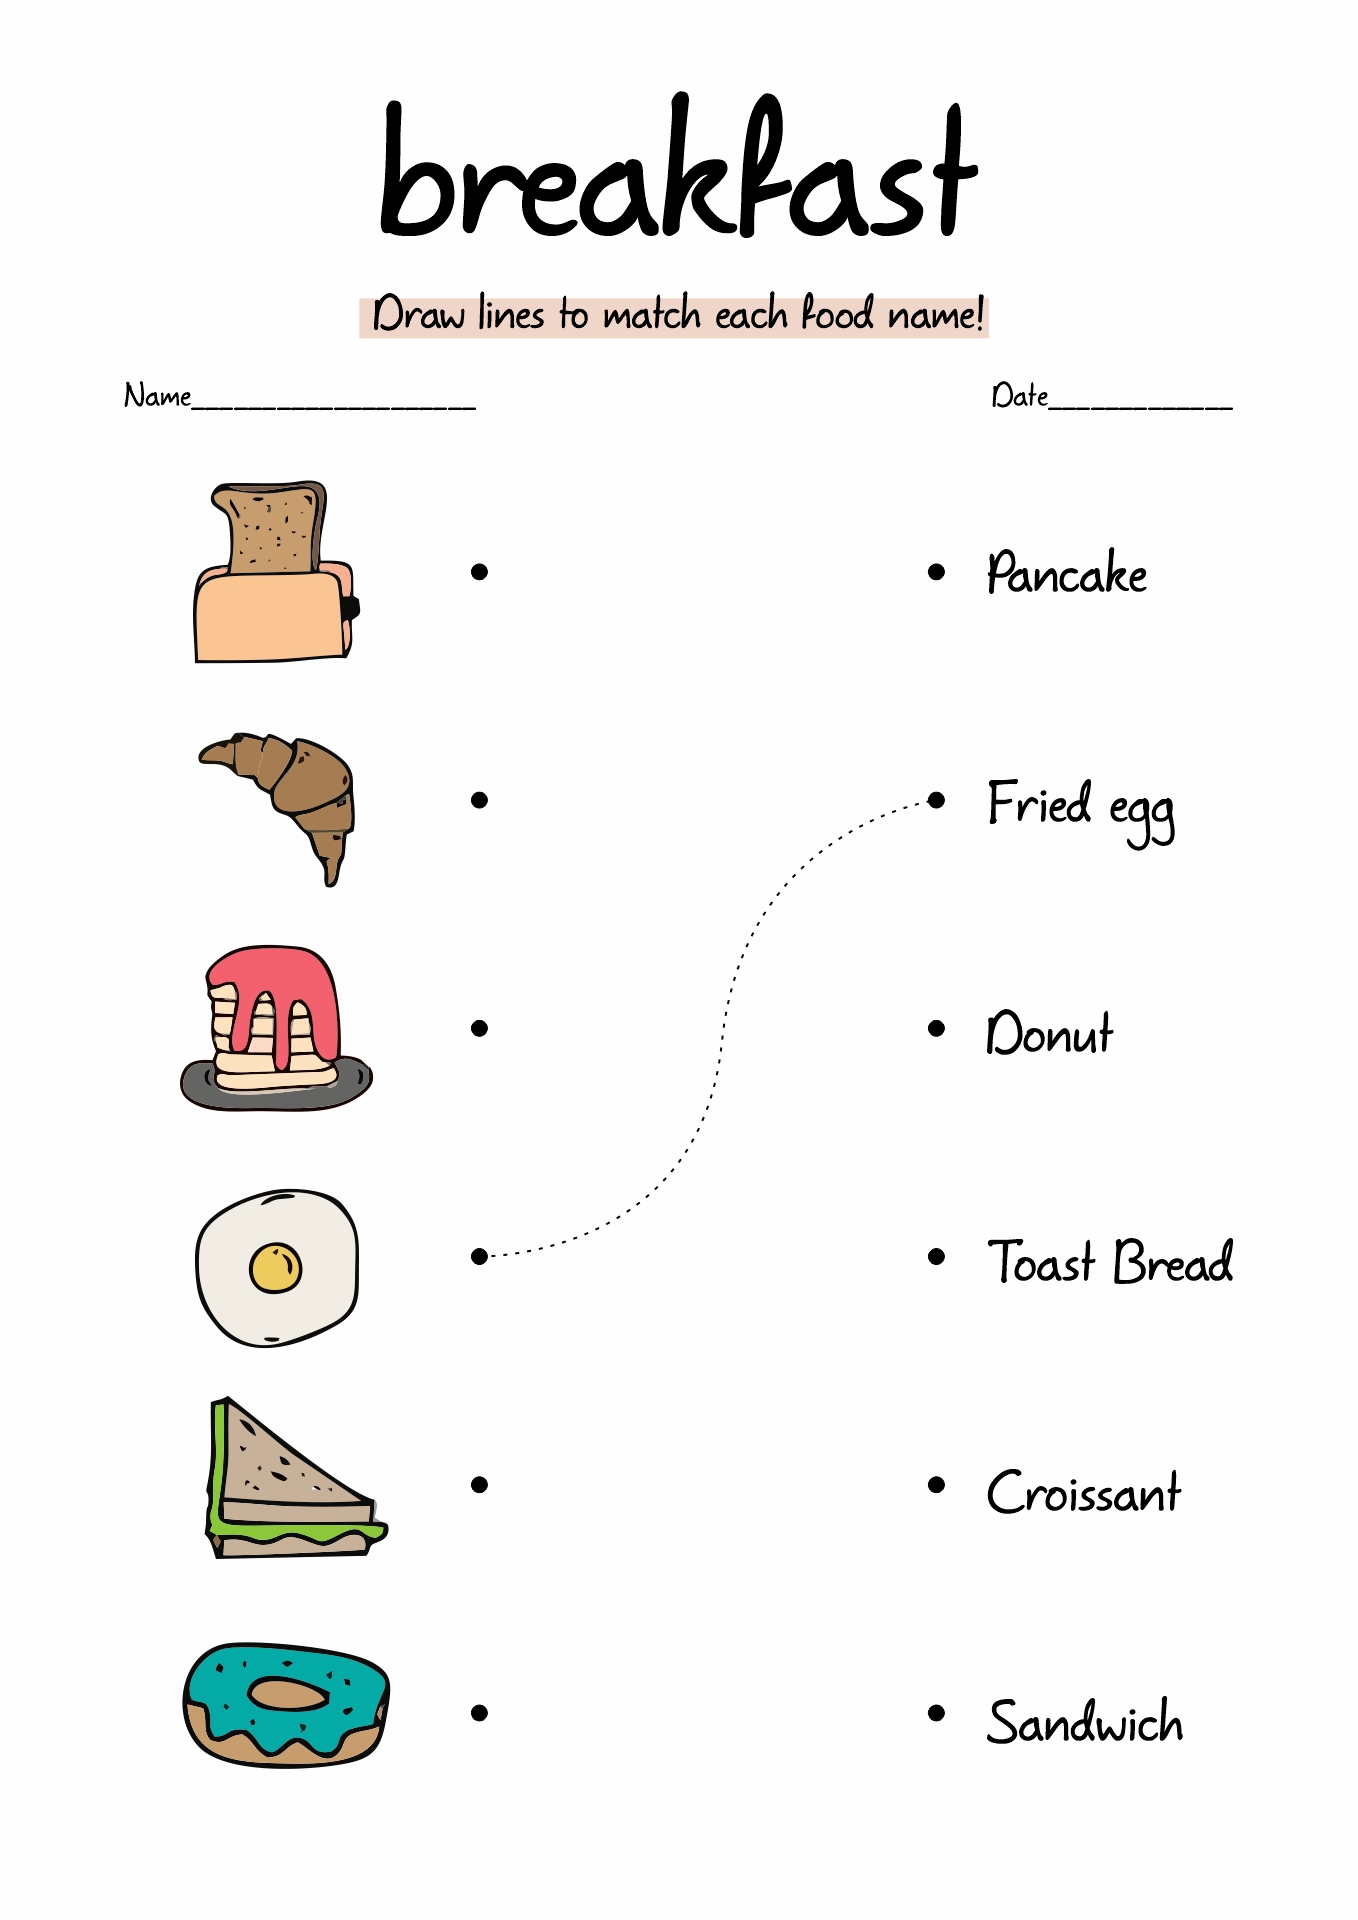 Printable Food Groups Worksheets